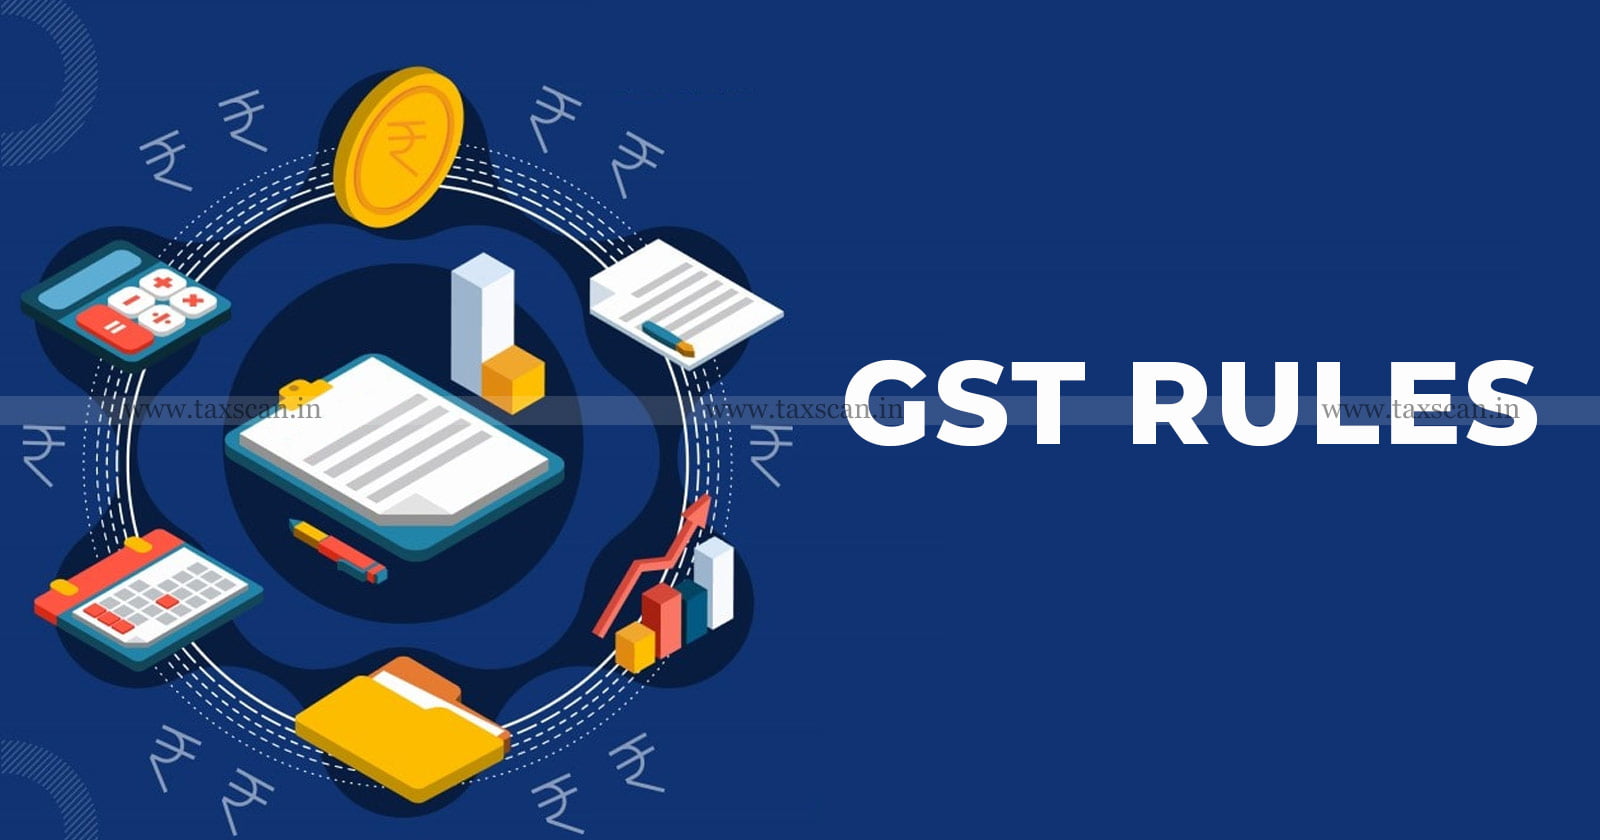 Govt Amends GST Rules - GST Council’s Recommendations - GST Rules - GST Council - Central GST Rules - GST - taxscan